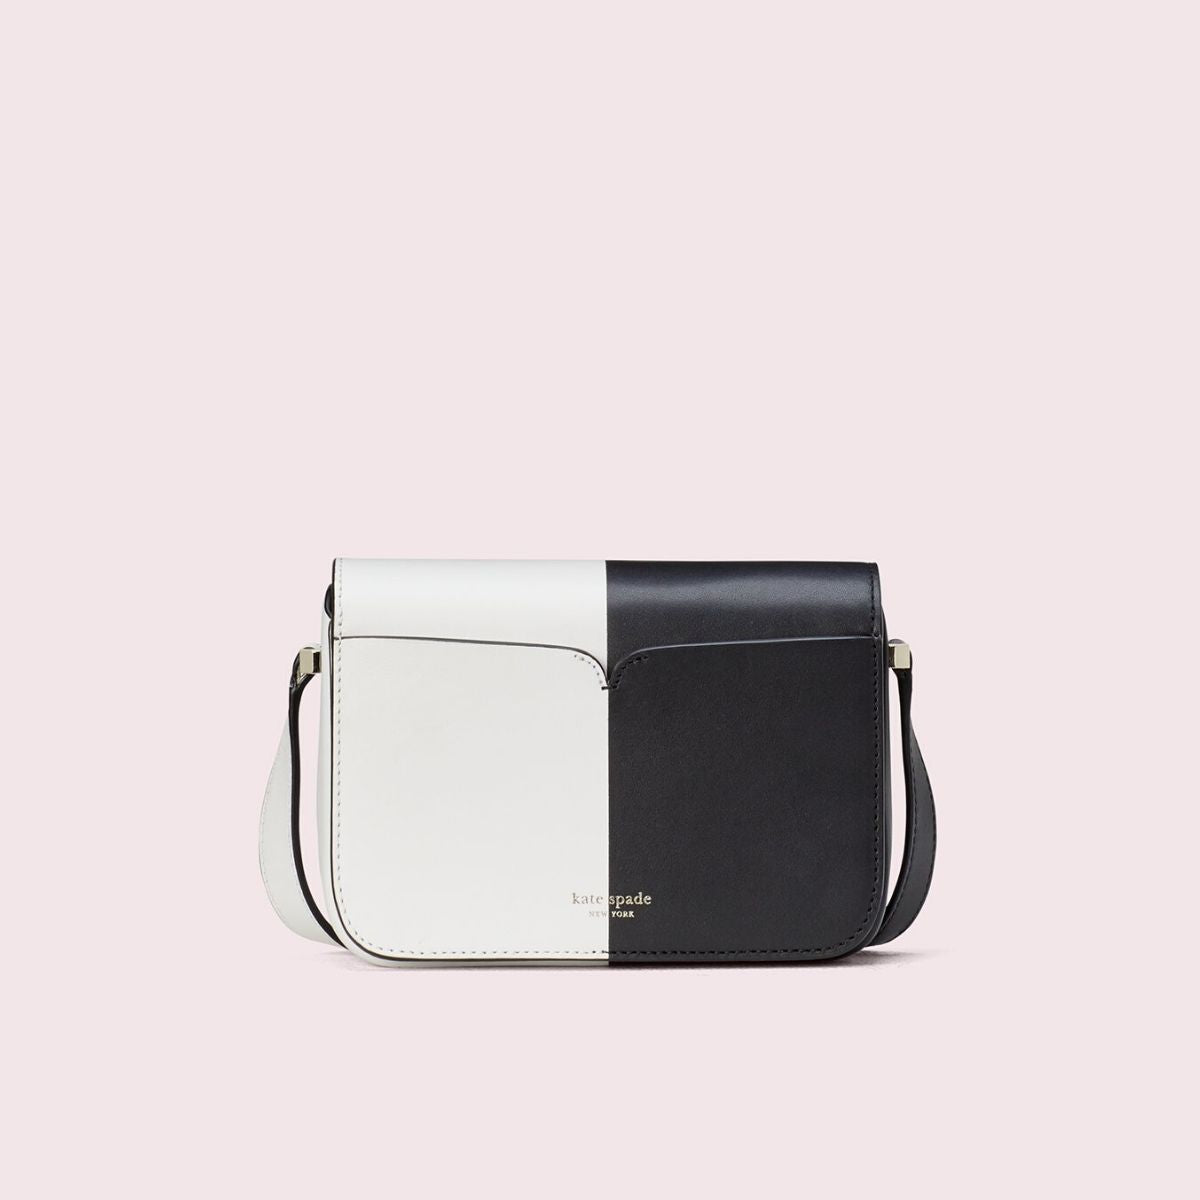 Kate Spade New York Bag For Women,Black & white - Crossbody Bags